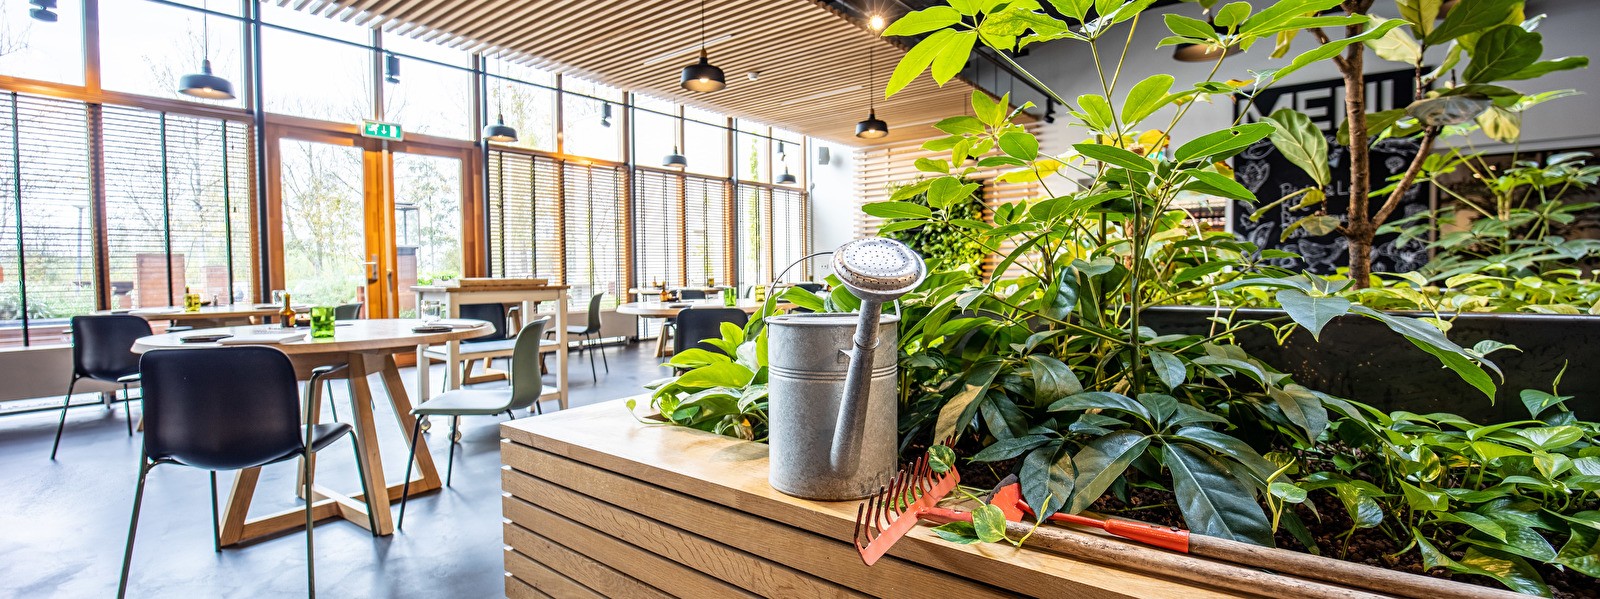 Restaurant Wannee Leeuwarden met ecologische kruidentuin